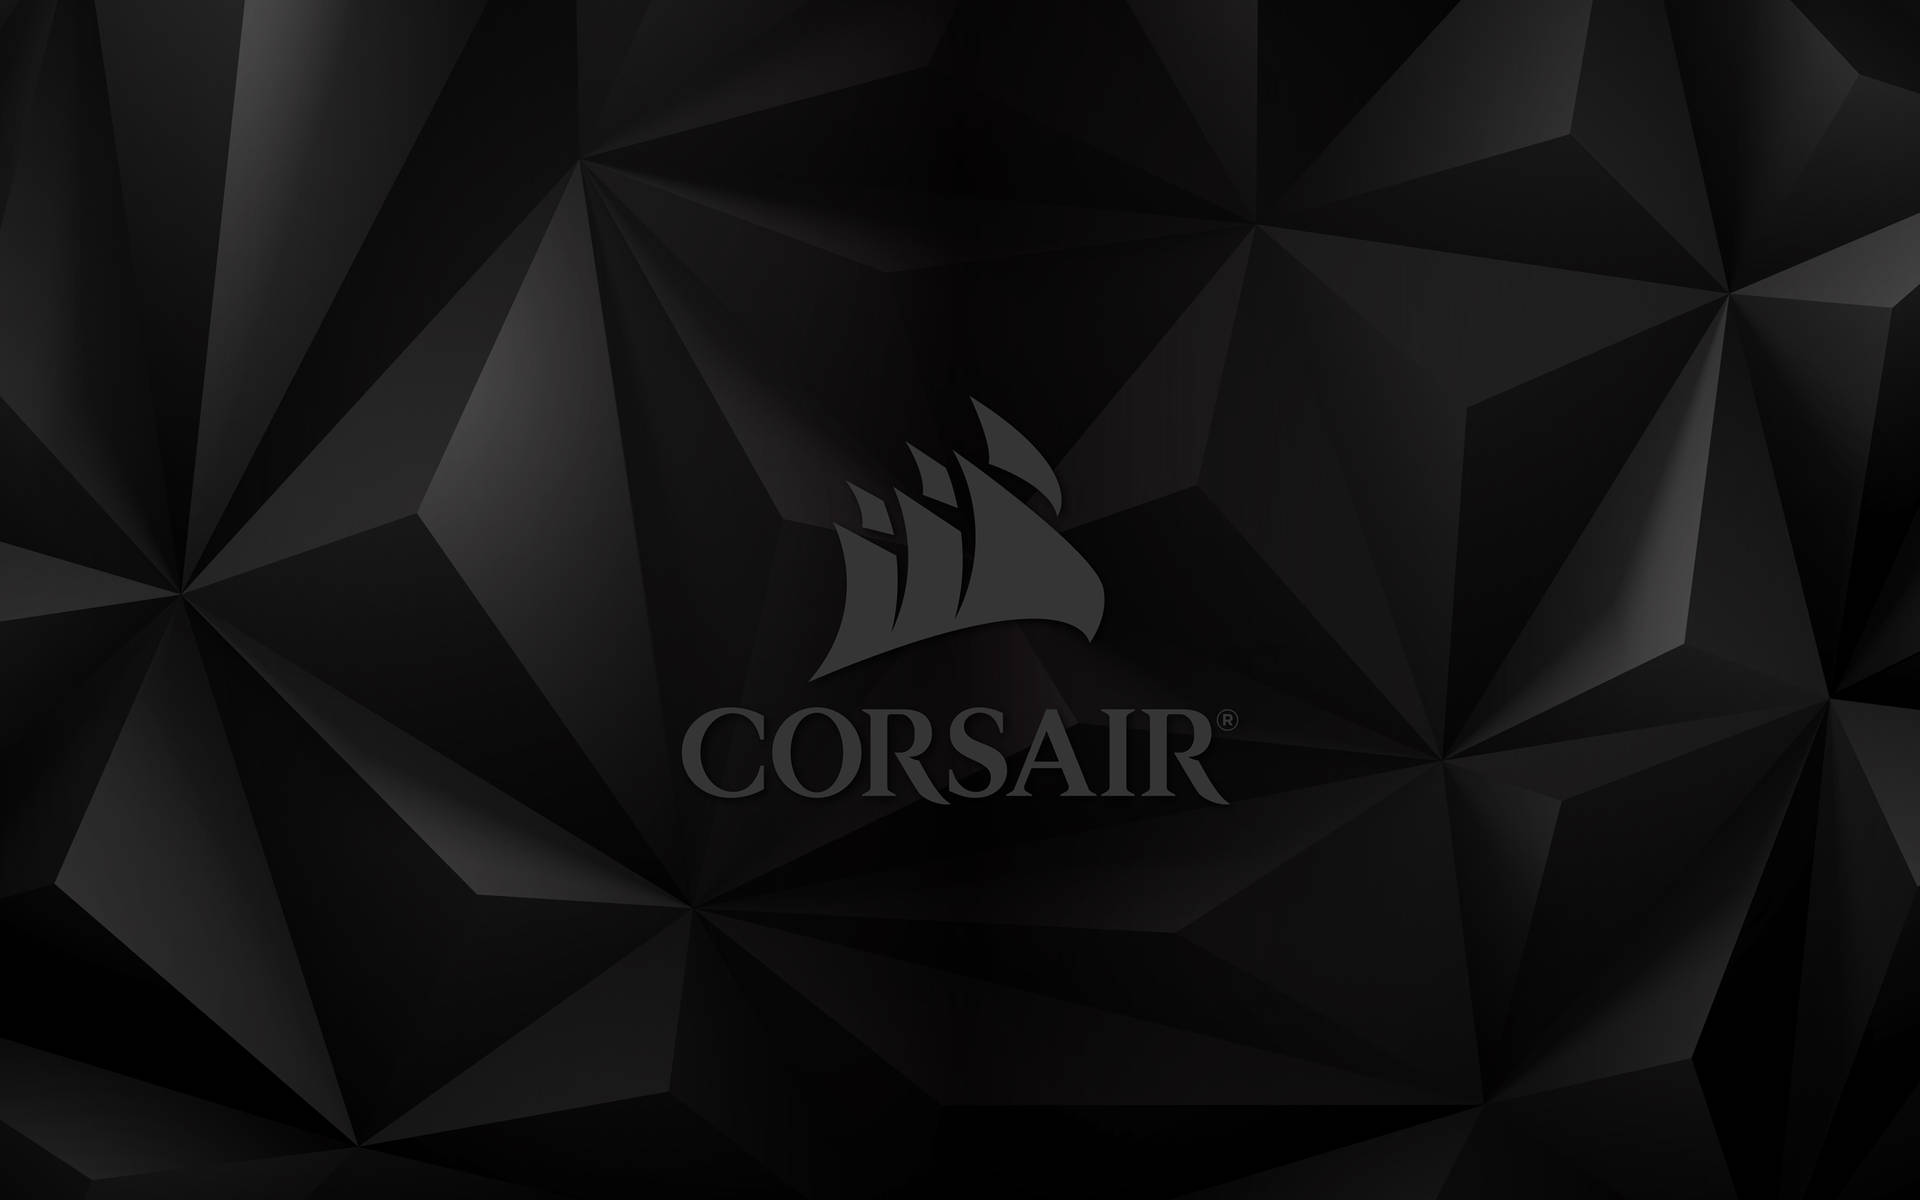 Corsair Gamer Logo Wallpaper